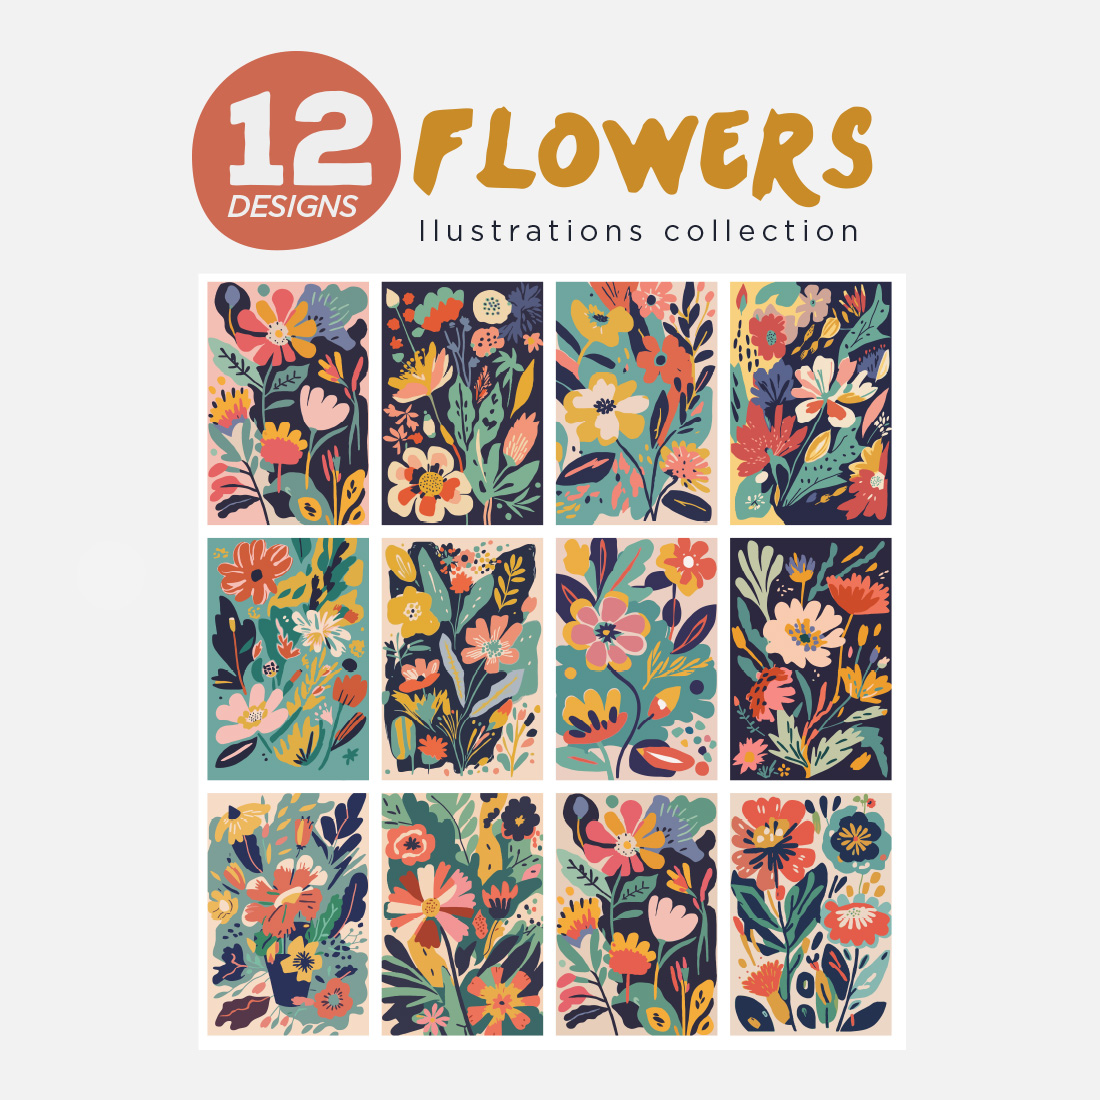 Floral Flower Illustration Design preview image.